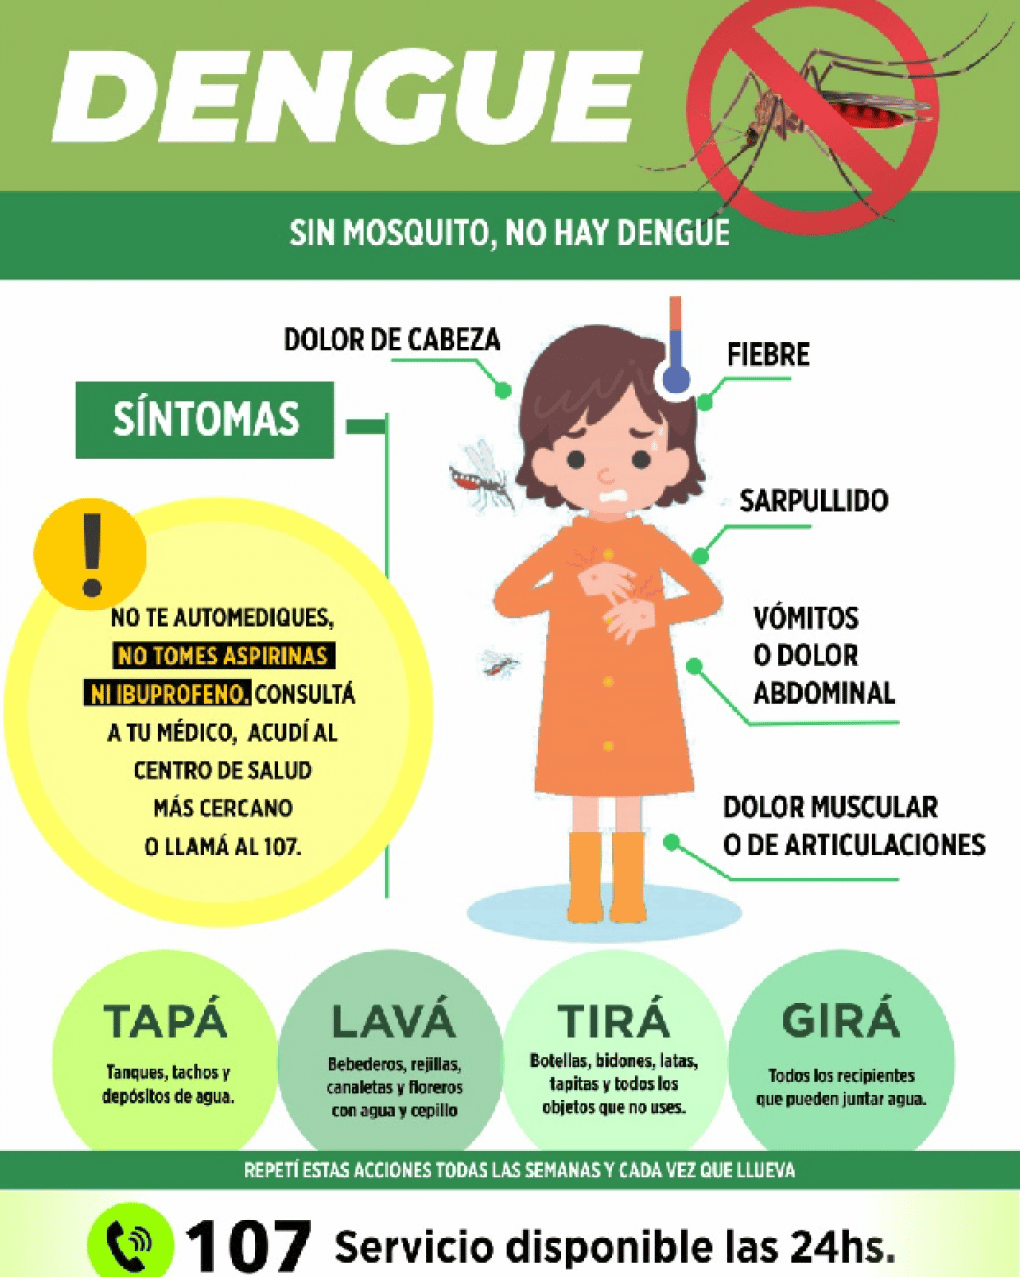 Ya son 32 los infectados por Dengue en Gualeguaychú